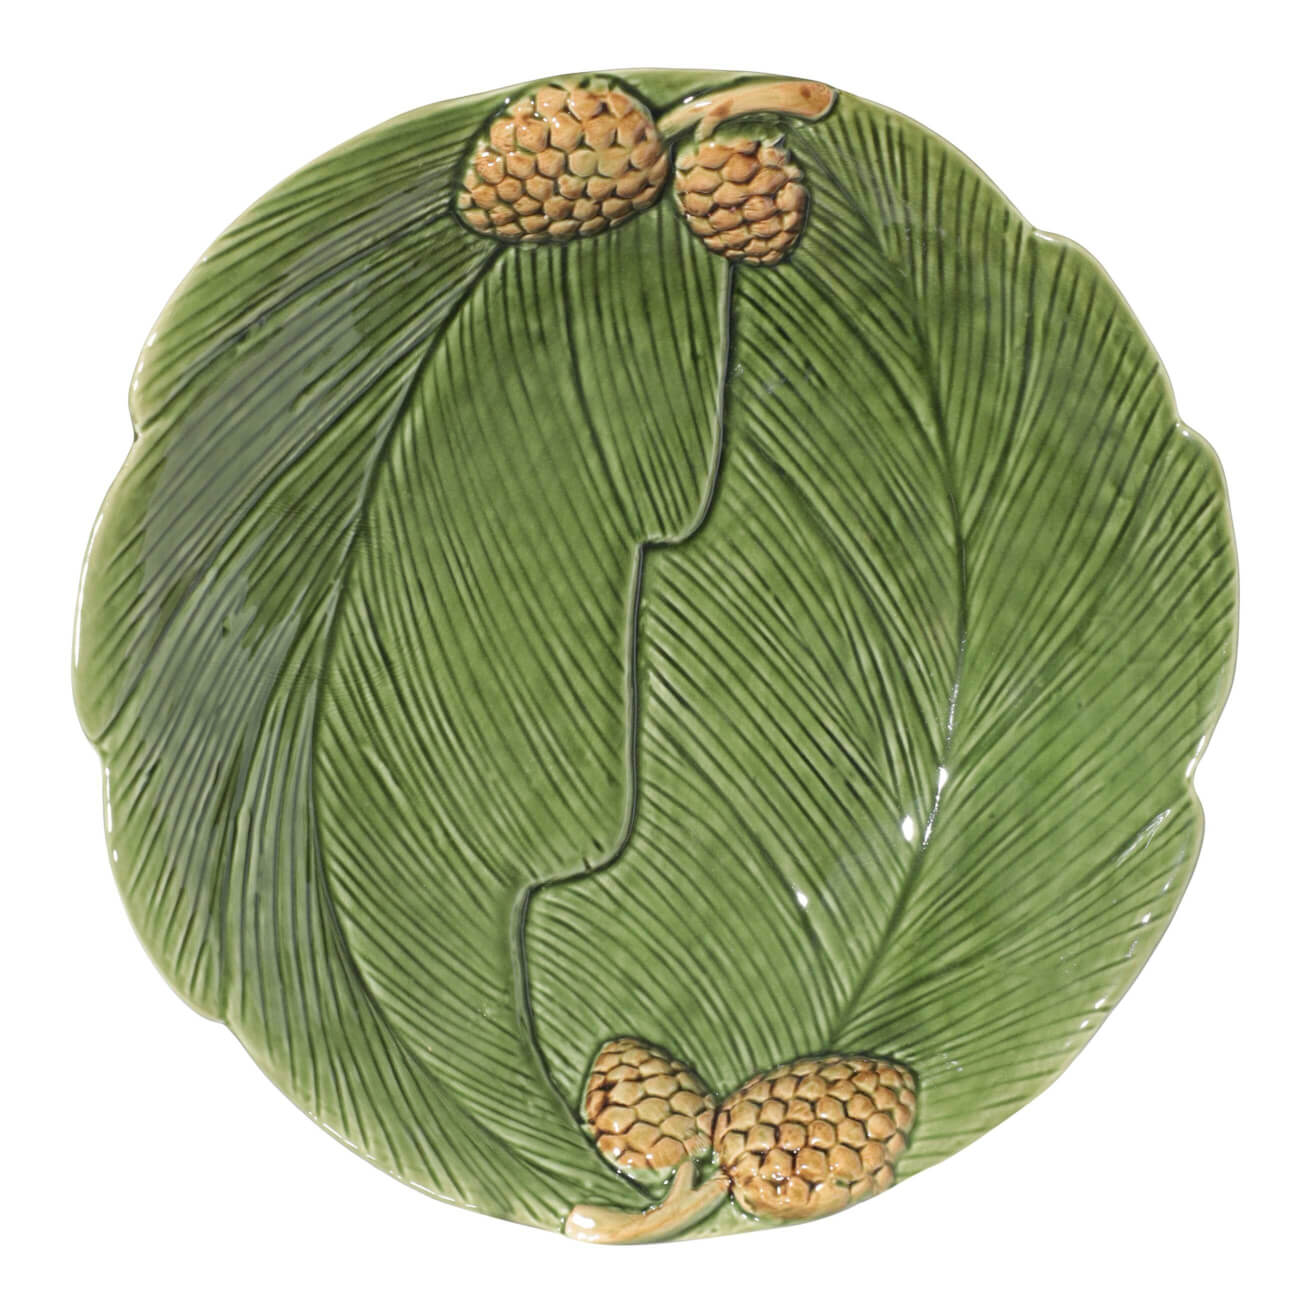 Блюдо, 26 см, керамика, круглое, зеленое, Шишки на листе, Fir cone изображение № 1